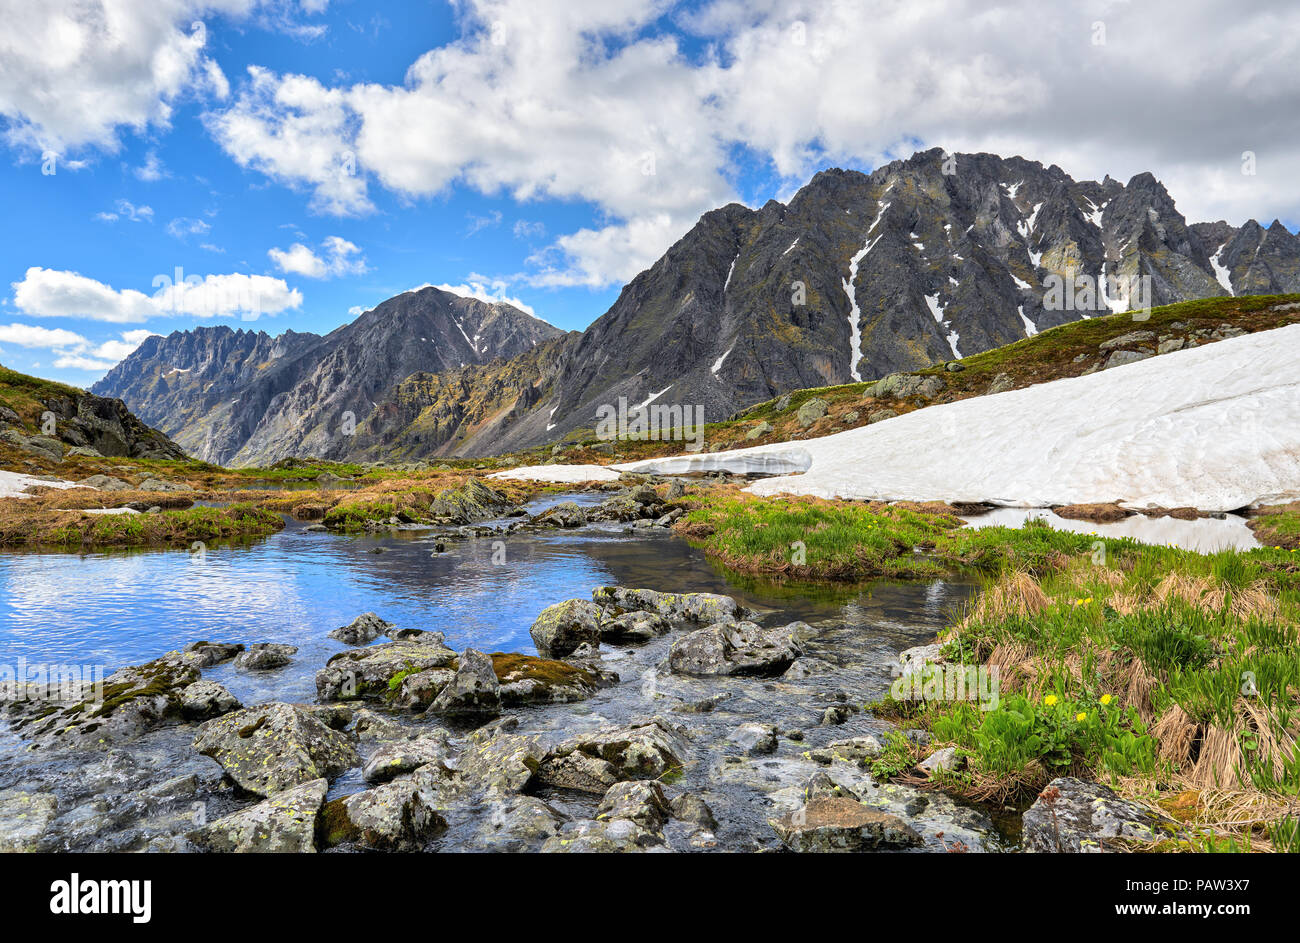 Steine mit Moos und Flechten über Wasser bedeckt in einem Berg hohl. Juni. Ostsibirien. Russland Stockfoto